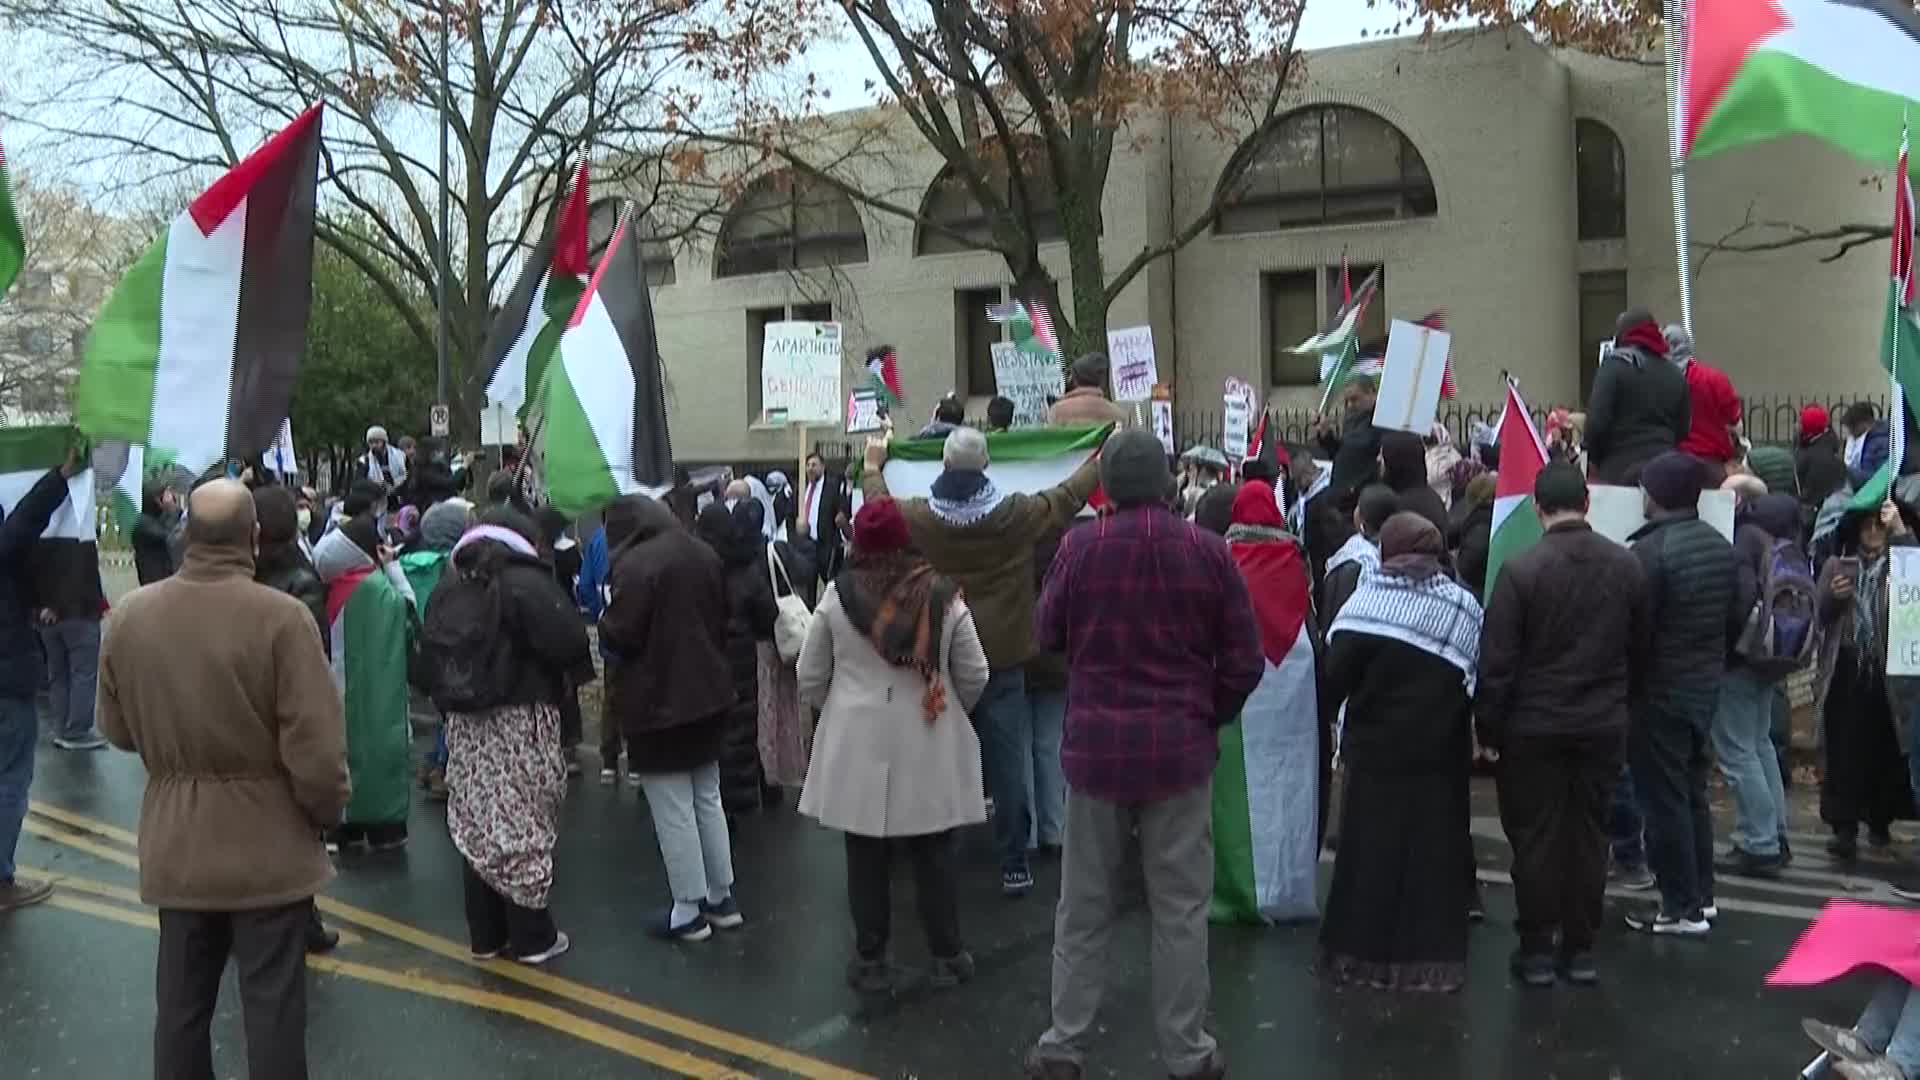 أمريكا تظاهرة أمام السفارة الاسرائيلية في واشنطن تضامنًا م...ة وتنديدًا بالعدوان عليها - snapshot 1.12